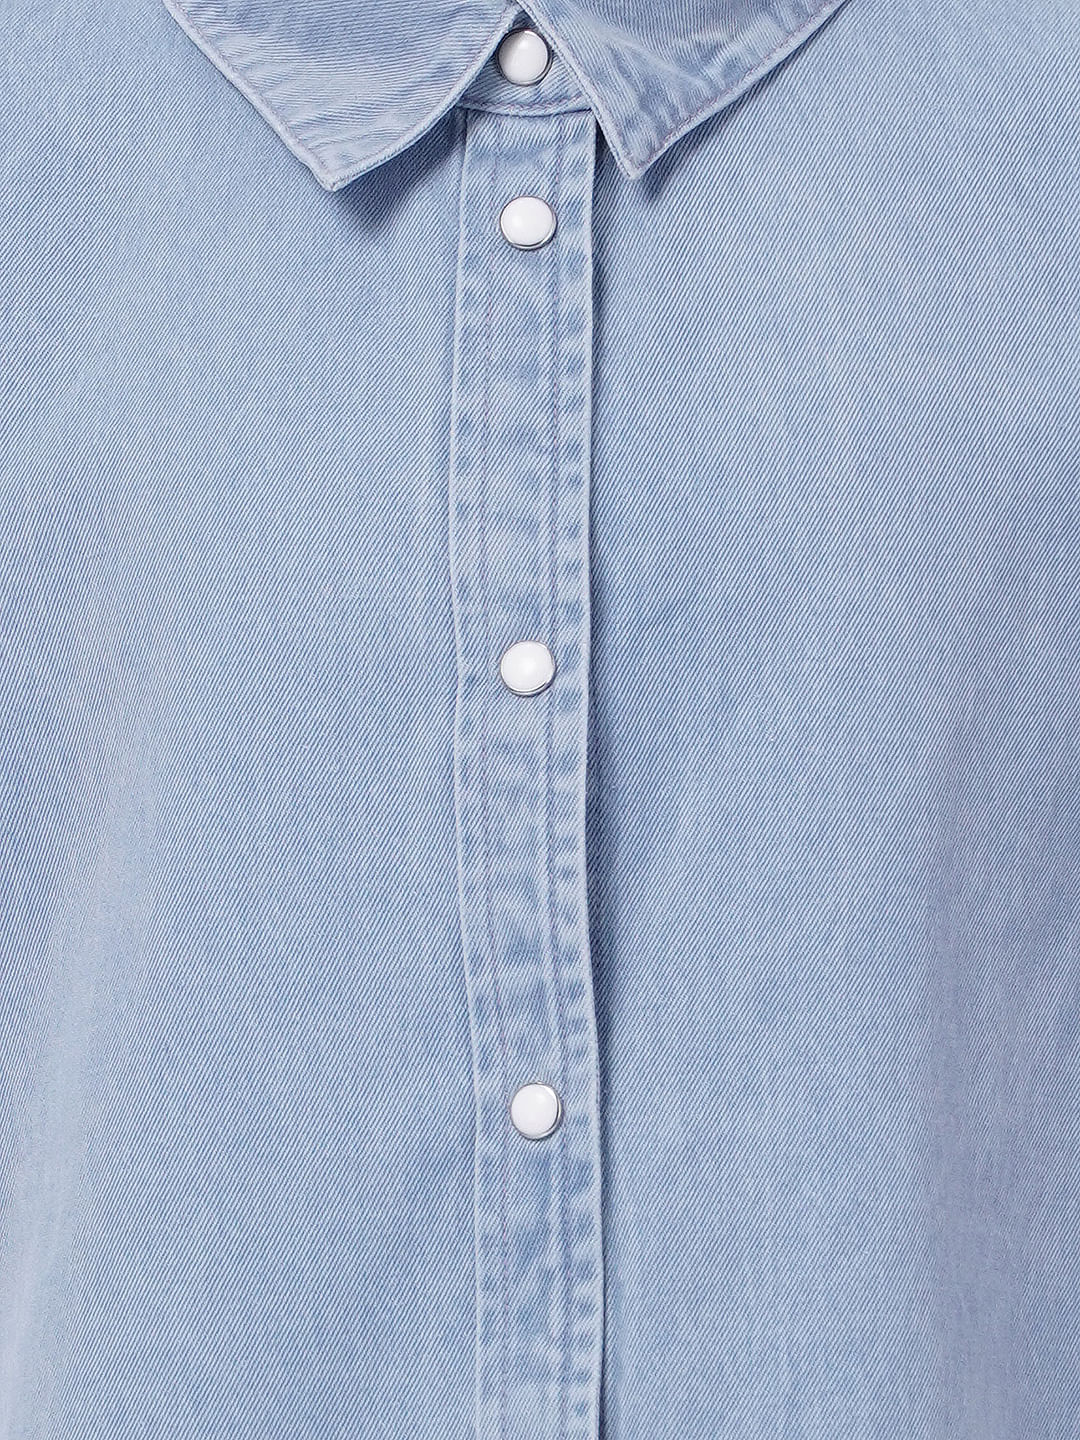 Stella McCartney Denim Shirt Dress - Farfetch